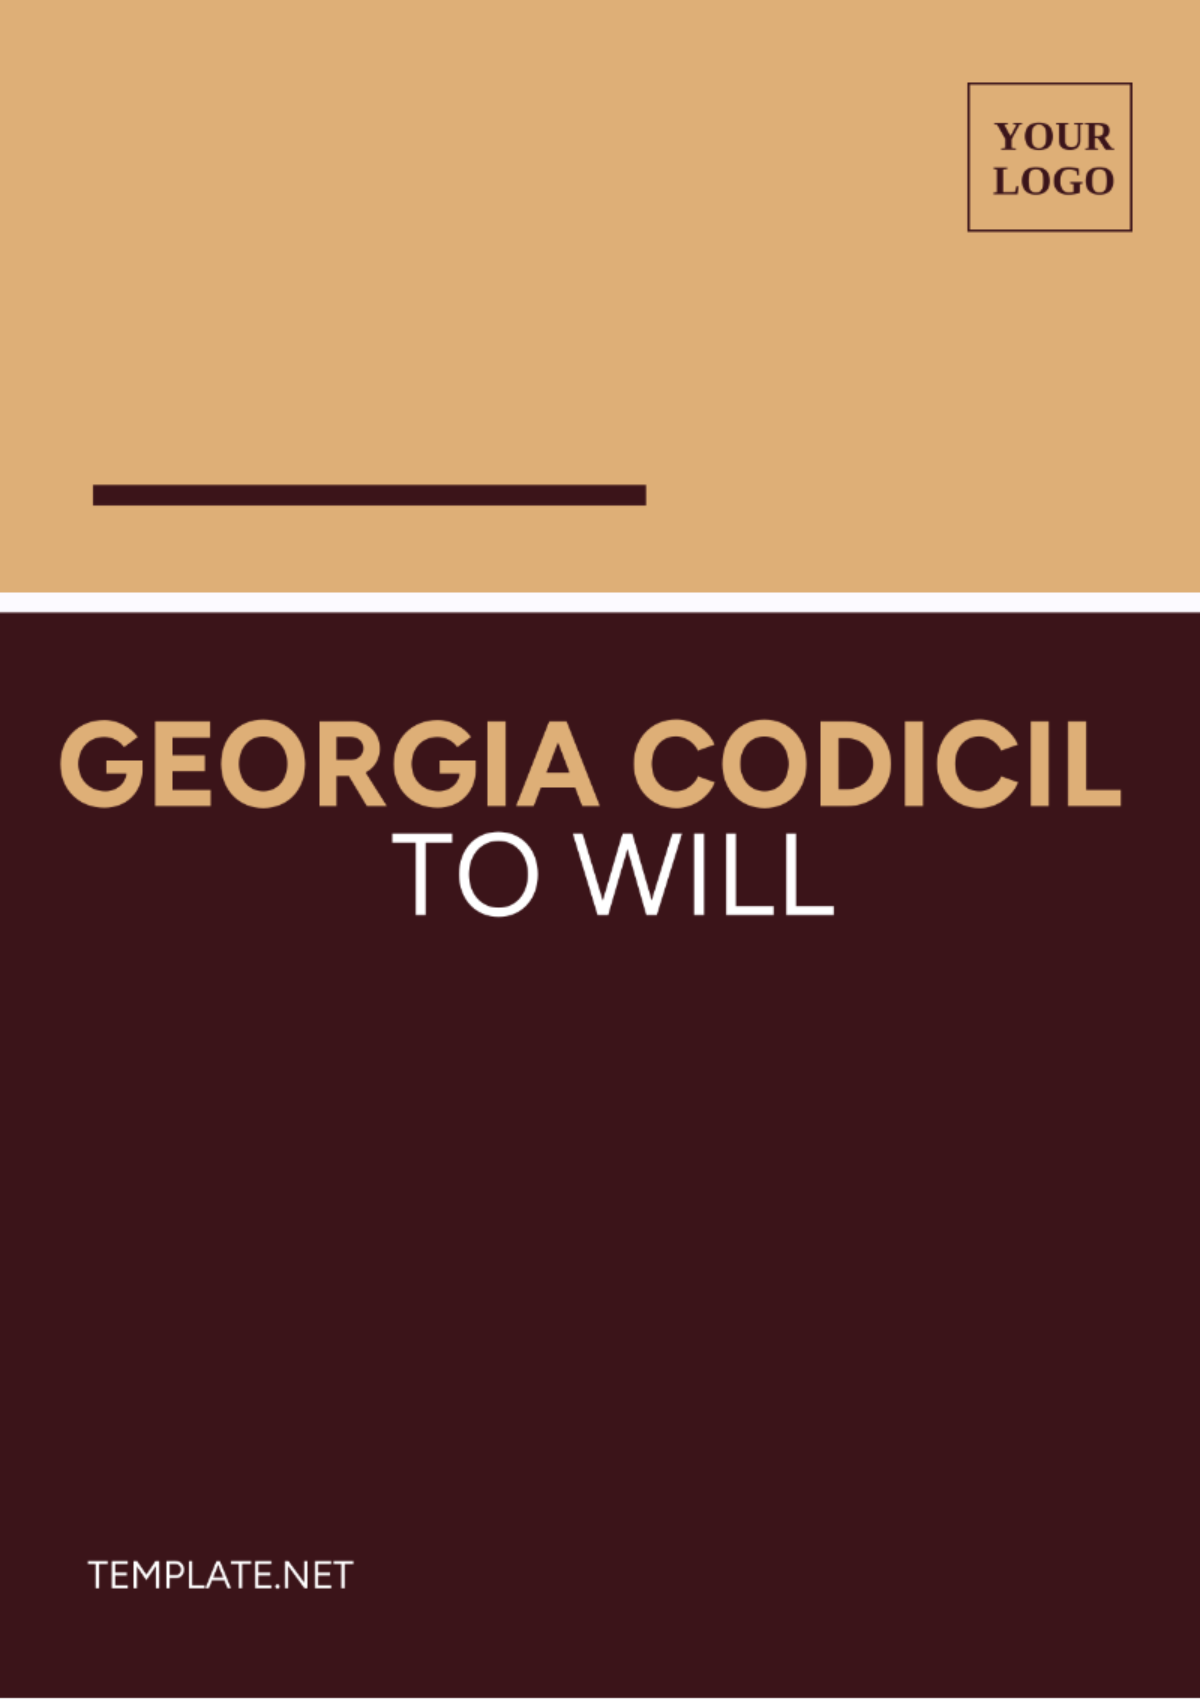 Georgia Codicil to Will Template